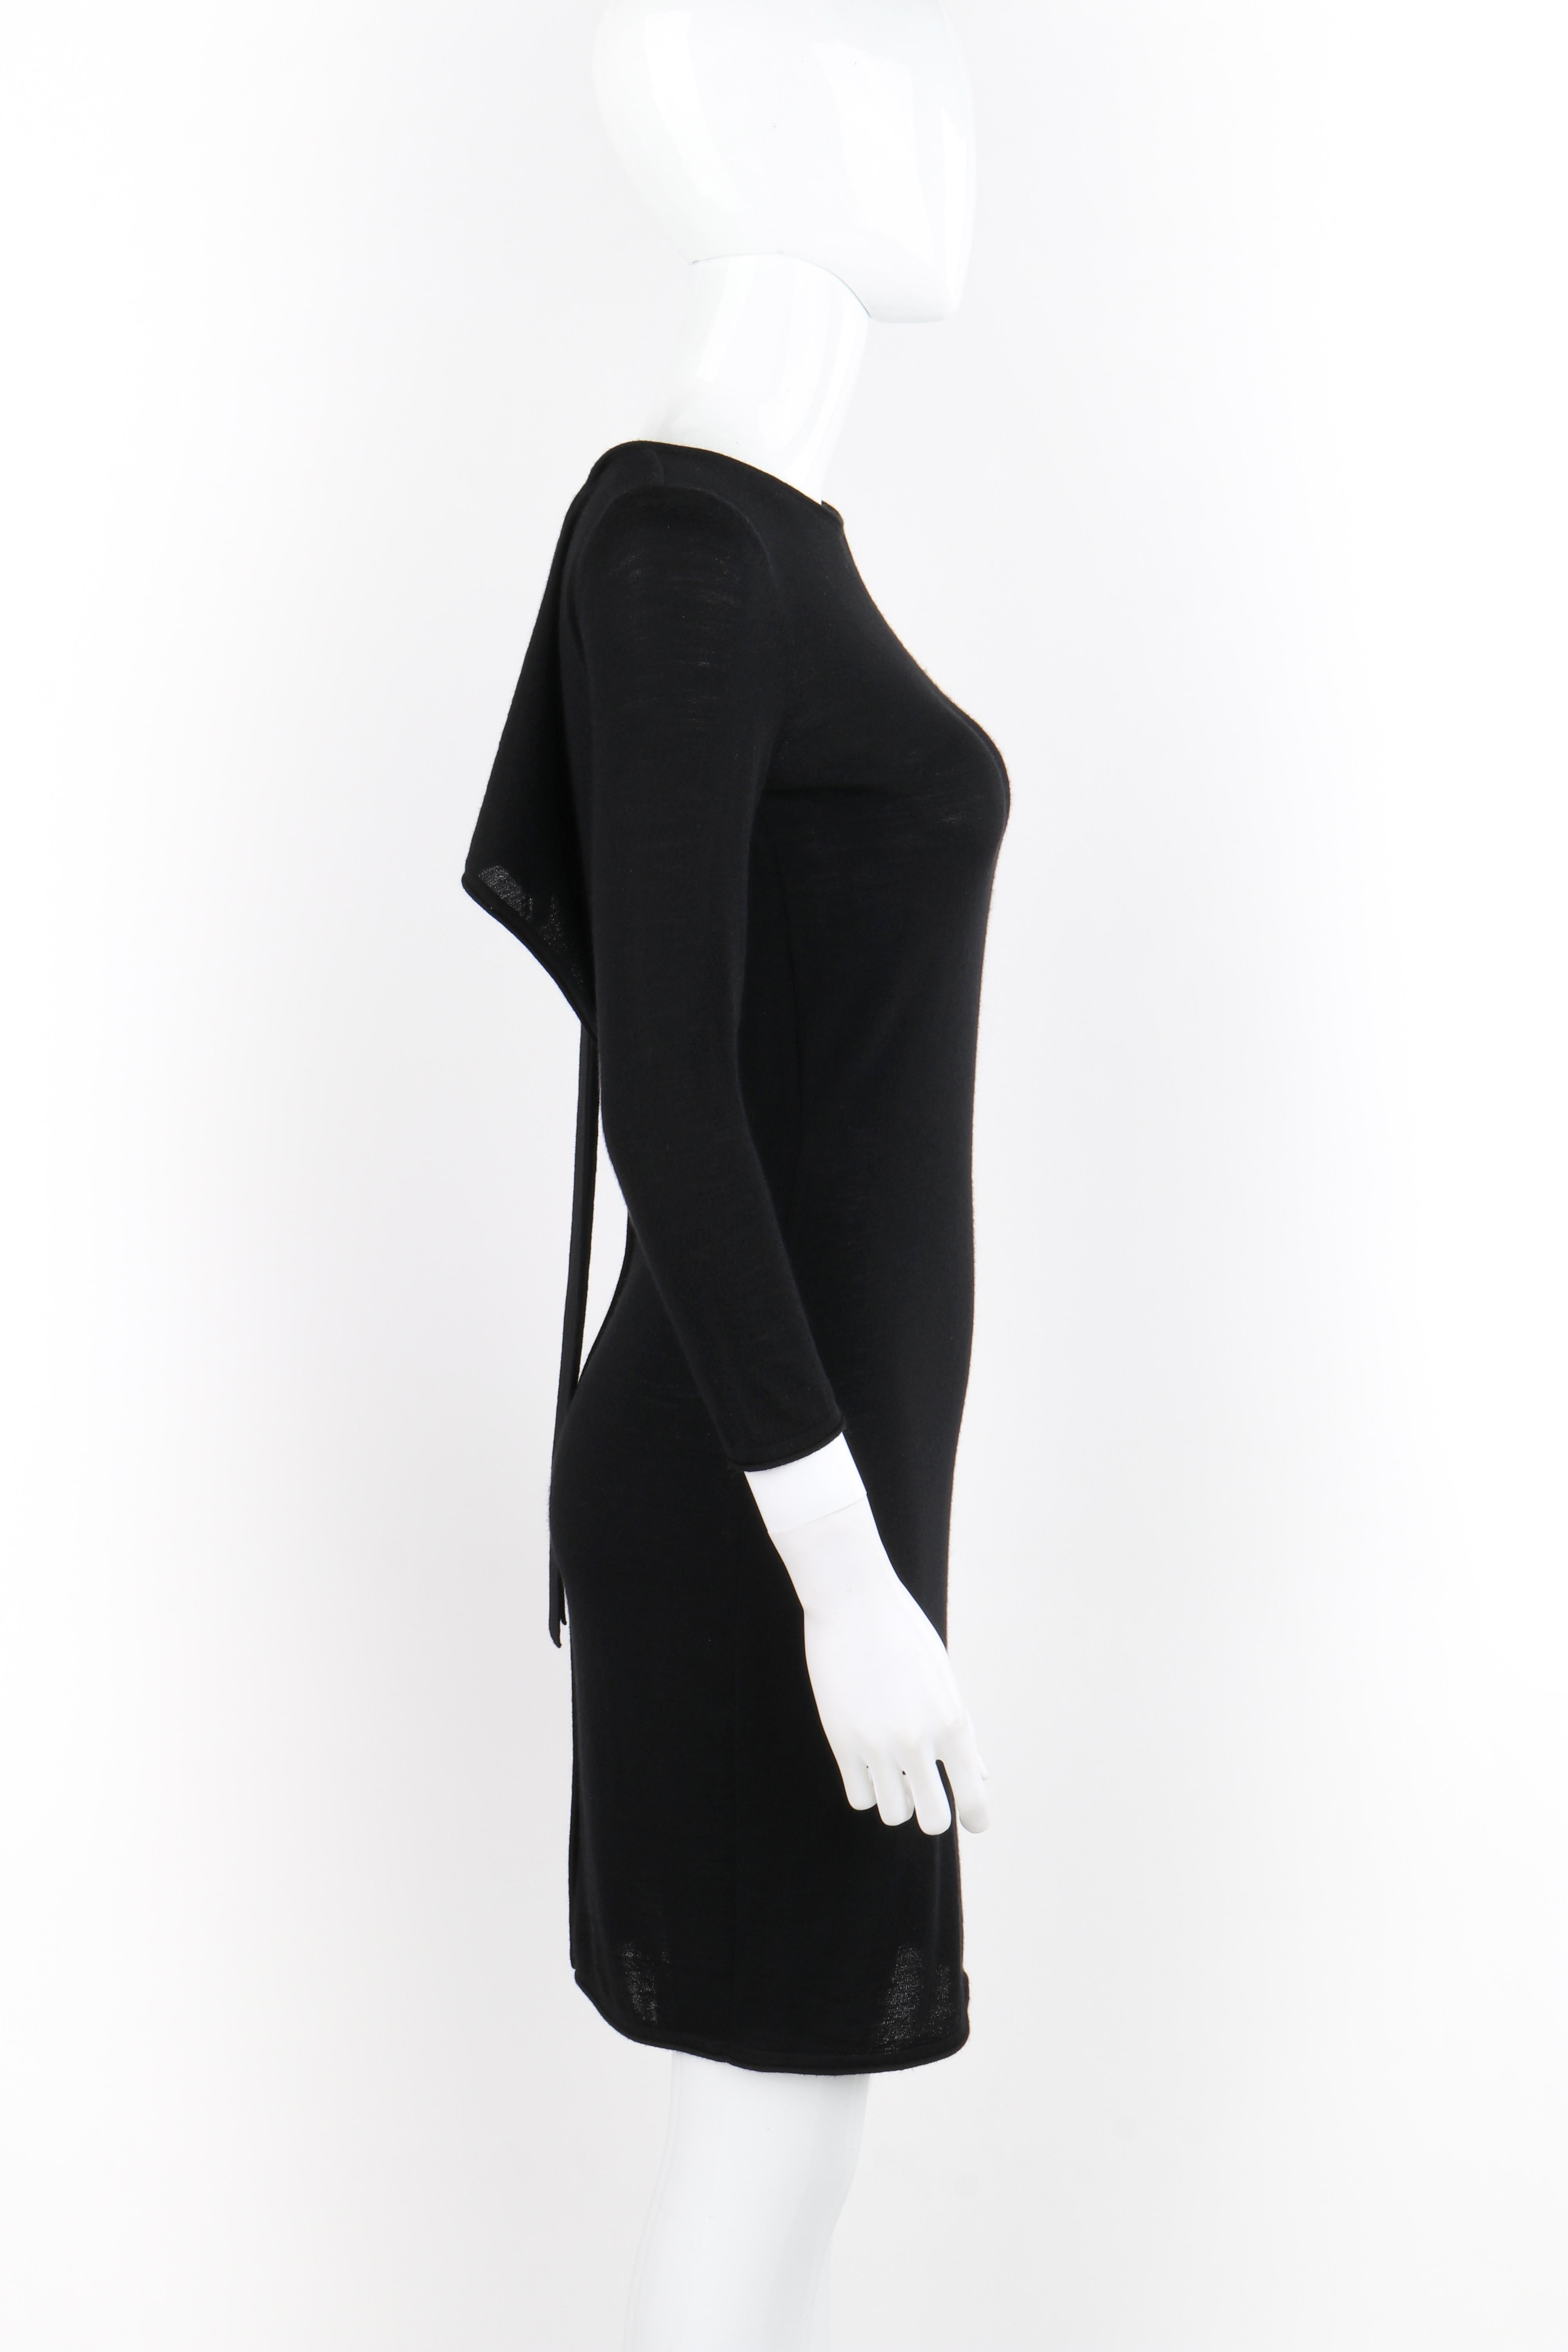 ALEXANDER McQUEEN F/W 2004 Black Knit Draped Open Back Tie Long Sleeve Dress For Sale 1